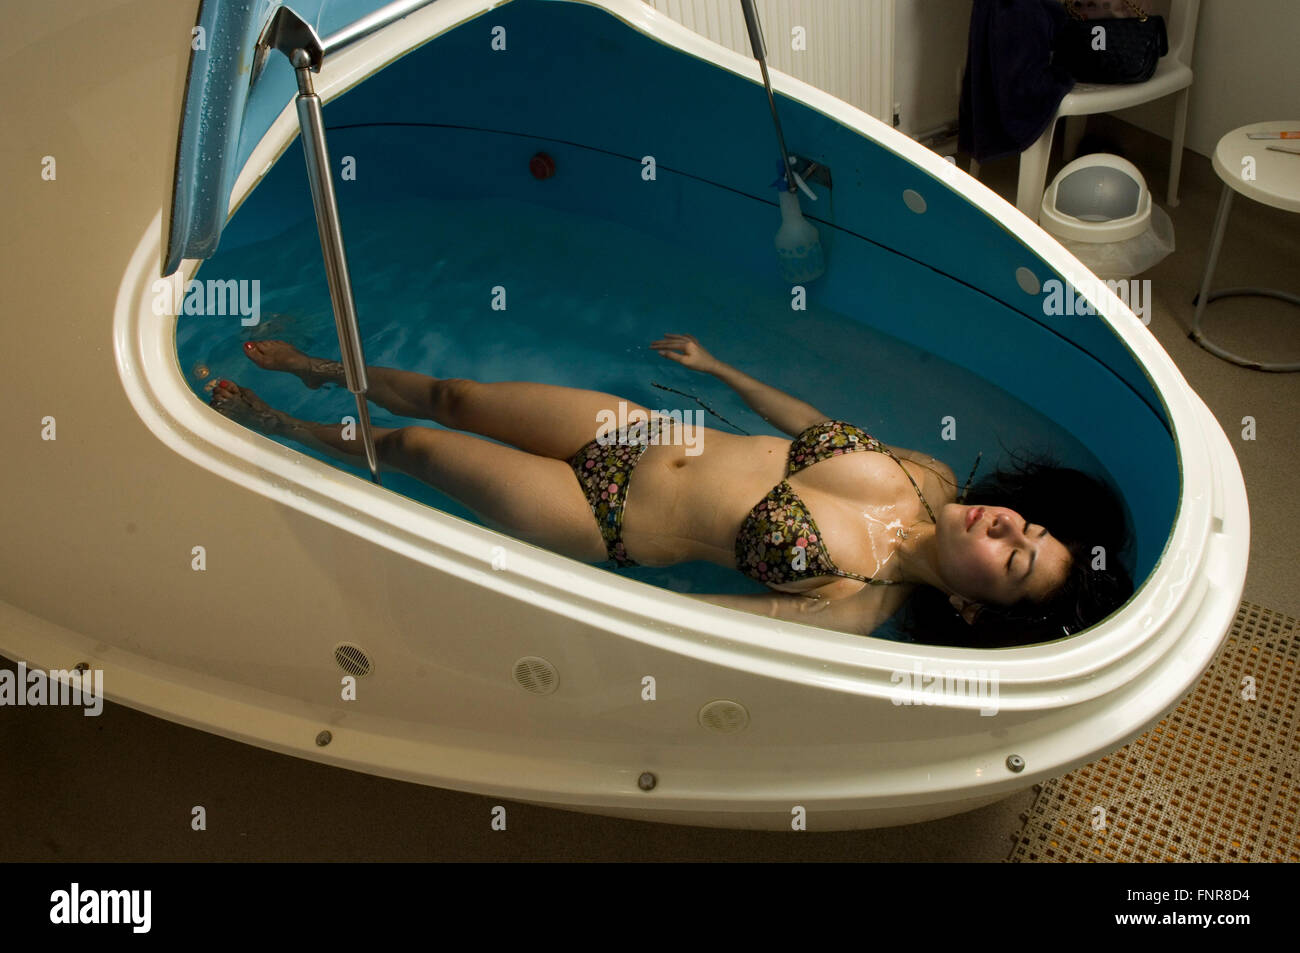 Terapia de flotación emprendida por una mujer con un tanque de flotación. Foto de stock